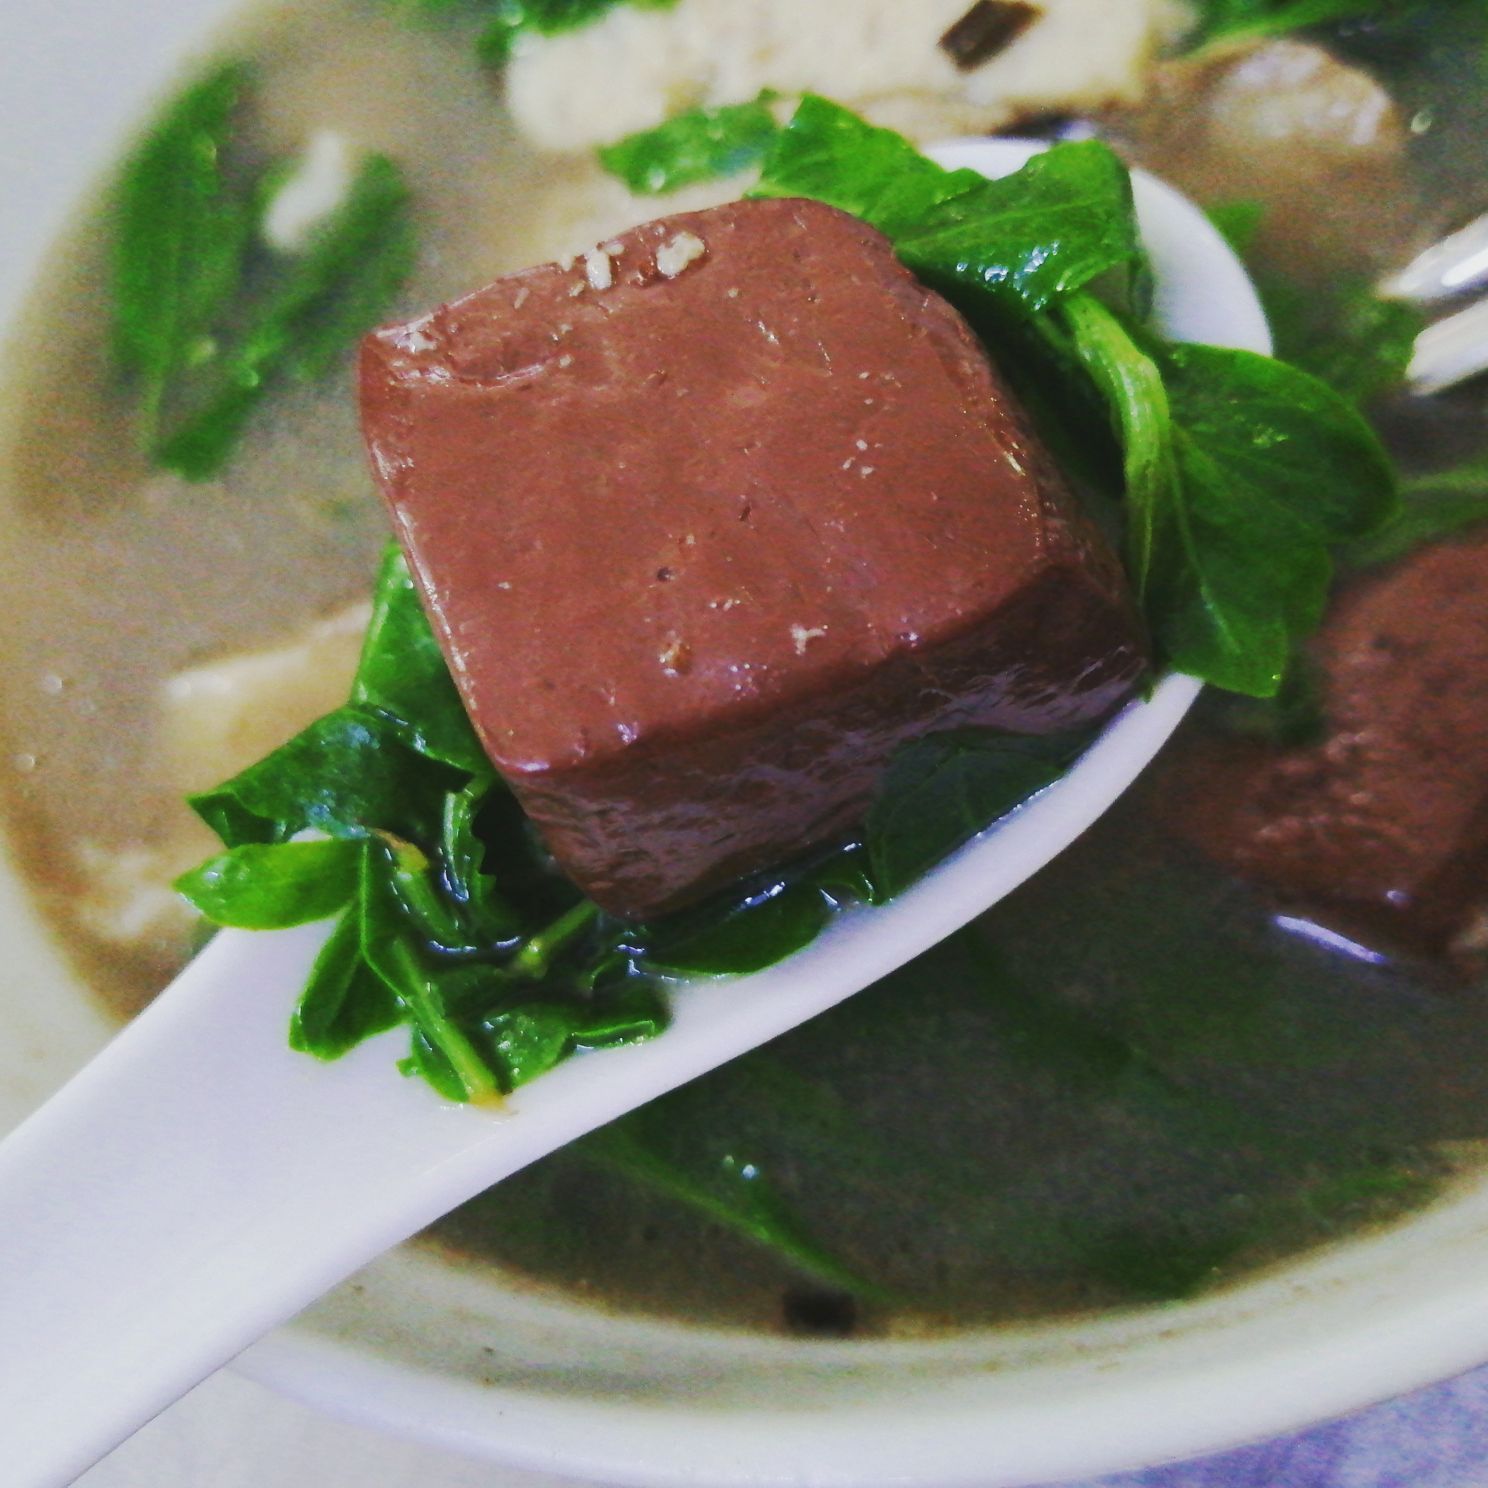 潮汕人的早晨，从一碗猪血汤开始，而它所用的配菜却是一味中药！